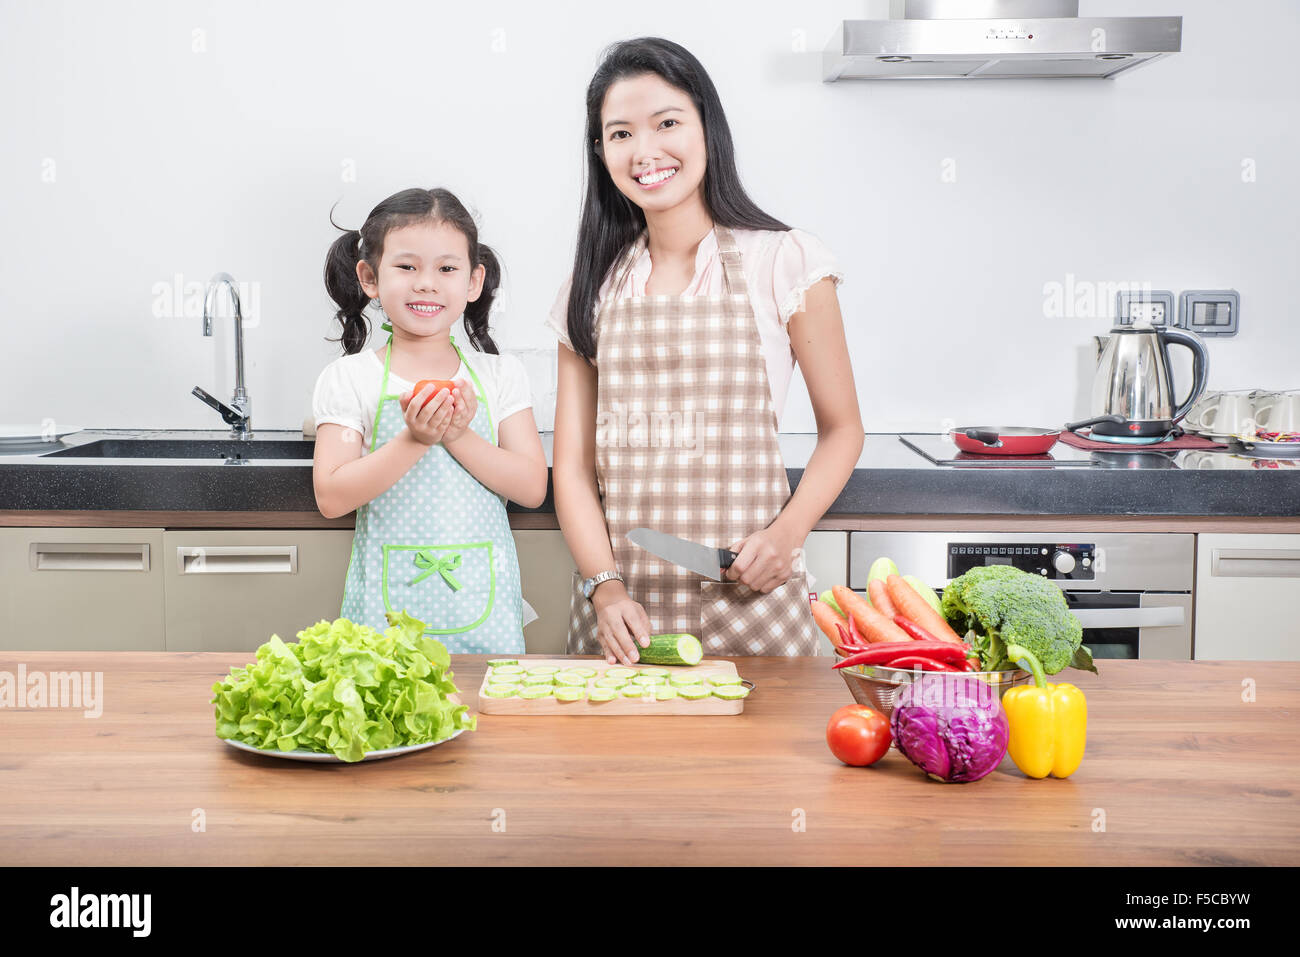 Familie, Kinder und glückliche Menschen Konzept - Asiatisch Kochen in der Küche zu Hause Tochter von Mutter und Kind Stockfoto